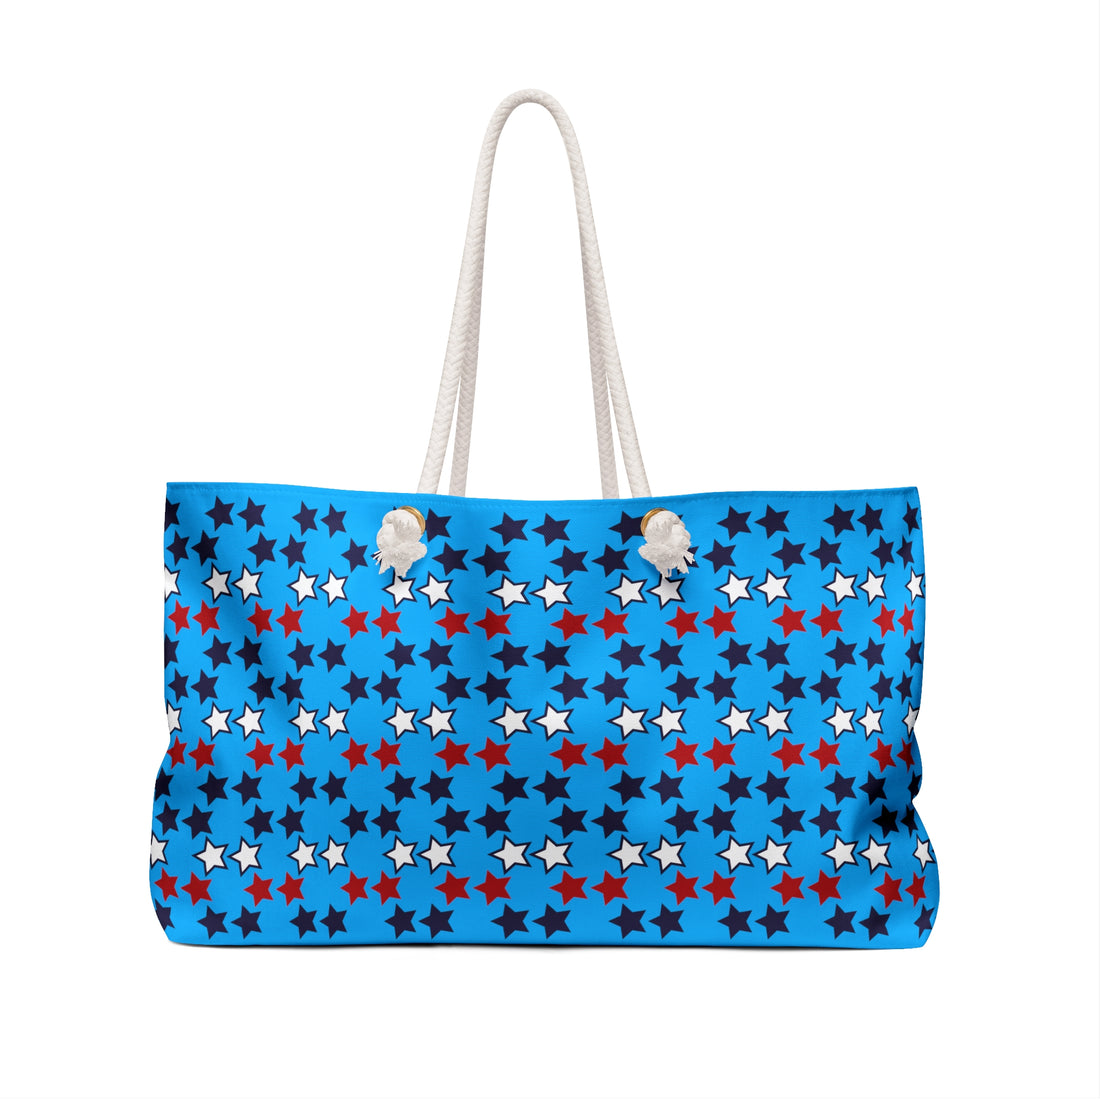 Aqua Starry Weekender Tote Bag